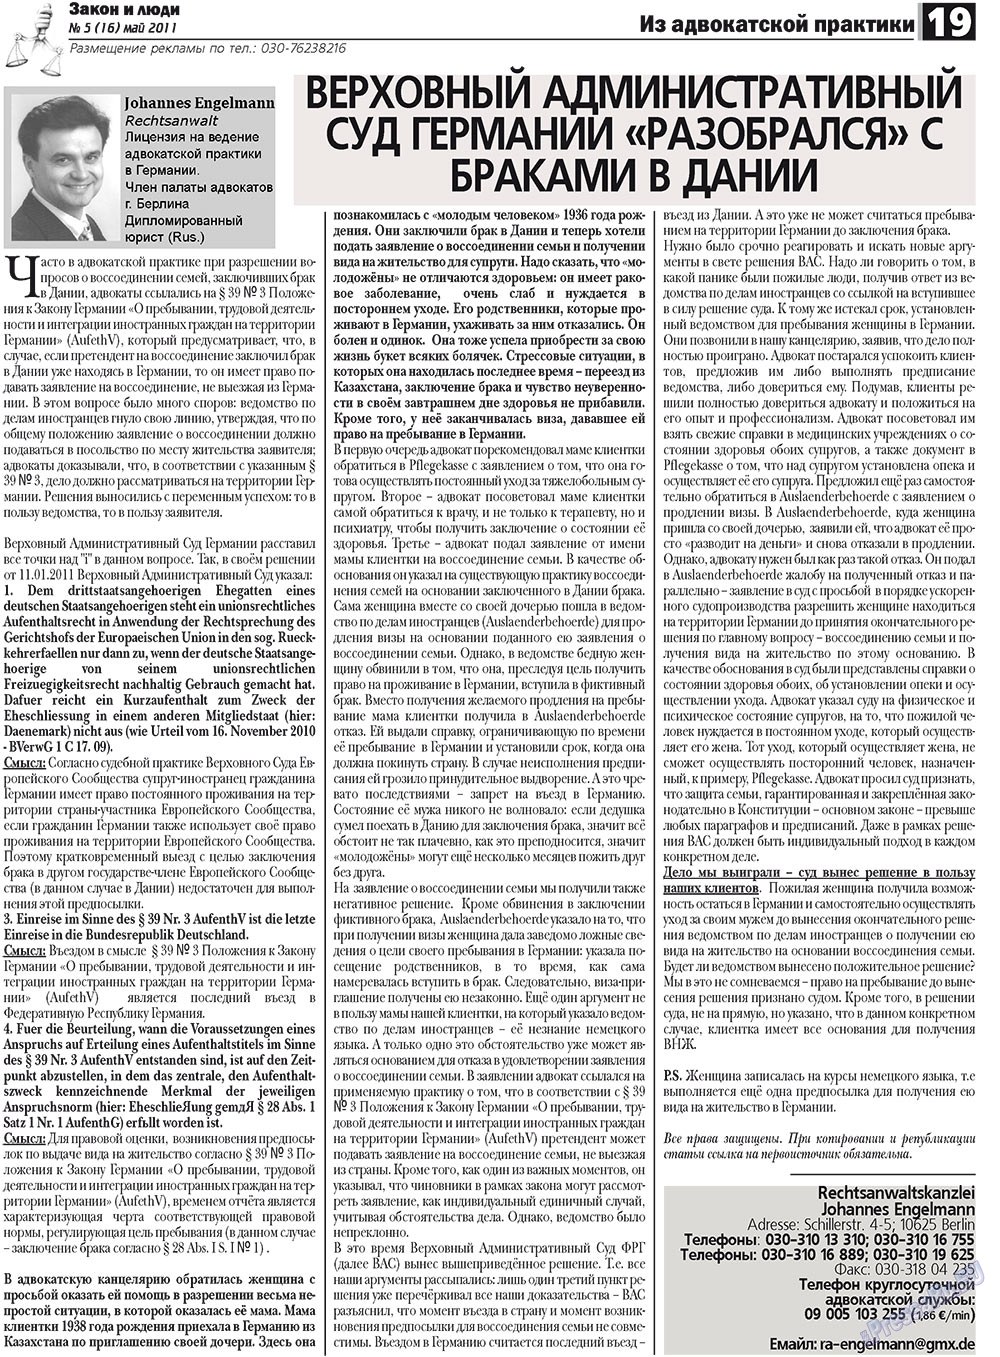 Закон и люди (газета). 2011 год, номер 5, стр. 19